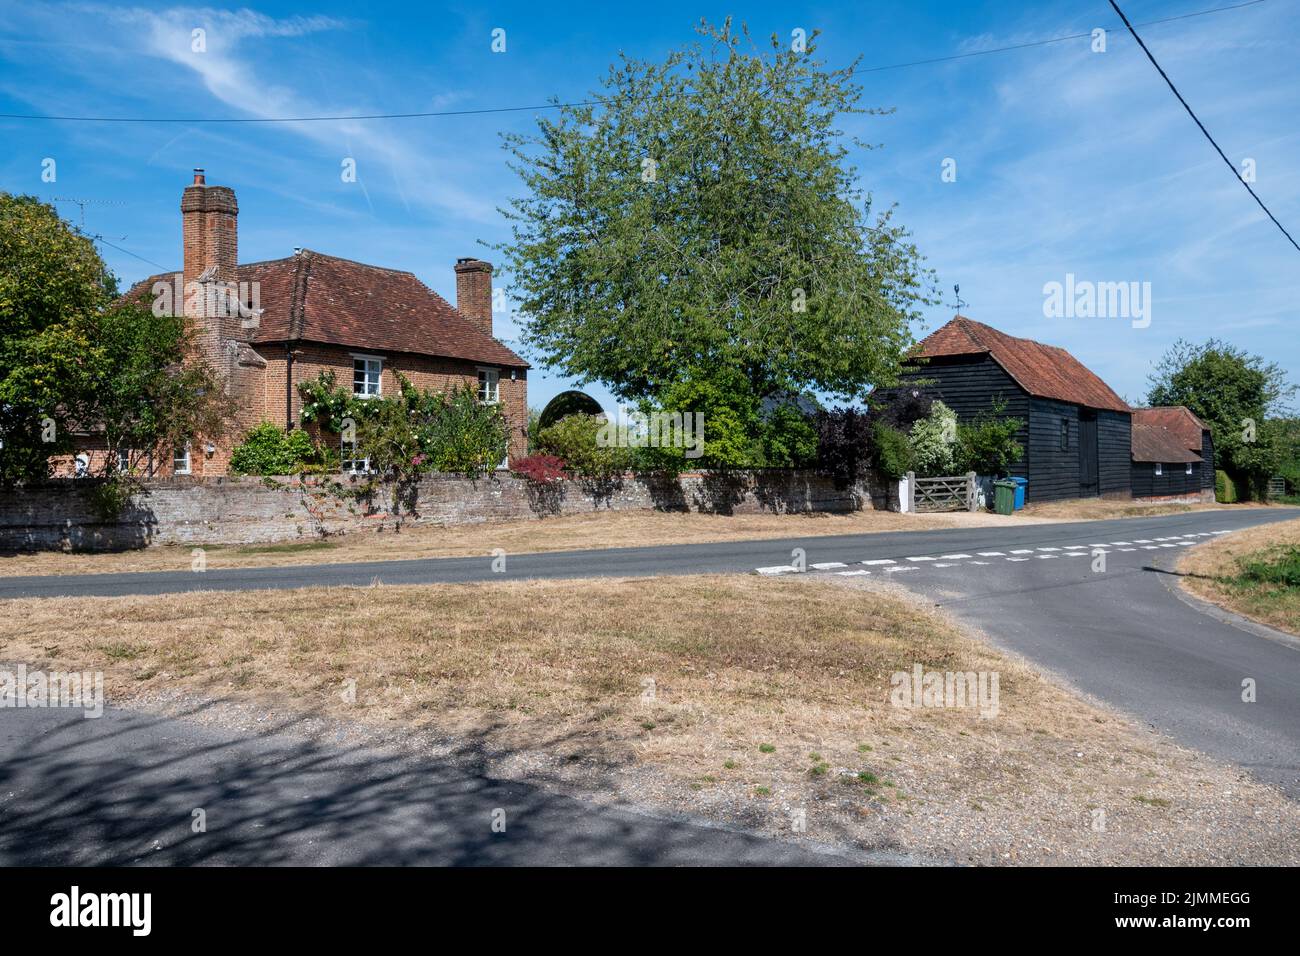 Village de Mattingley, vue sur la rue, Hampshire, Angleterre, Royaume-Uni Banque D'Images